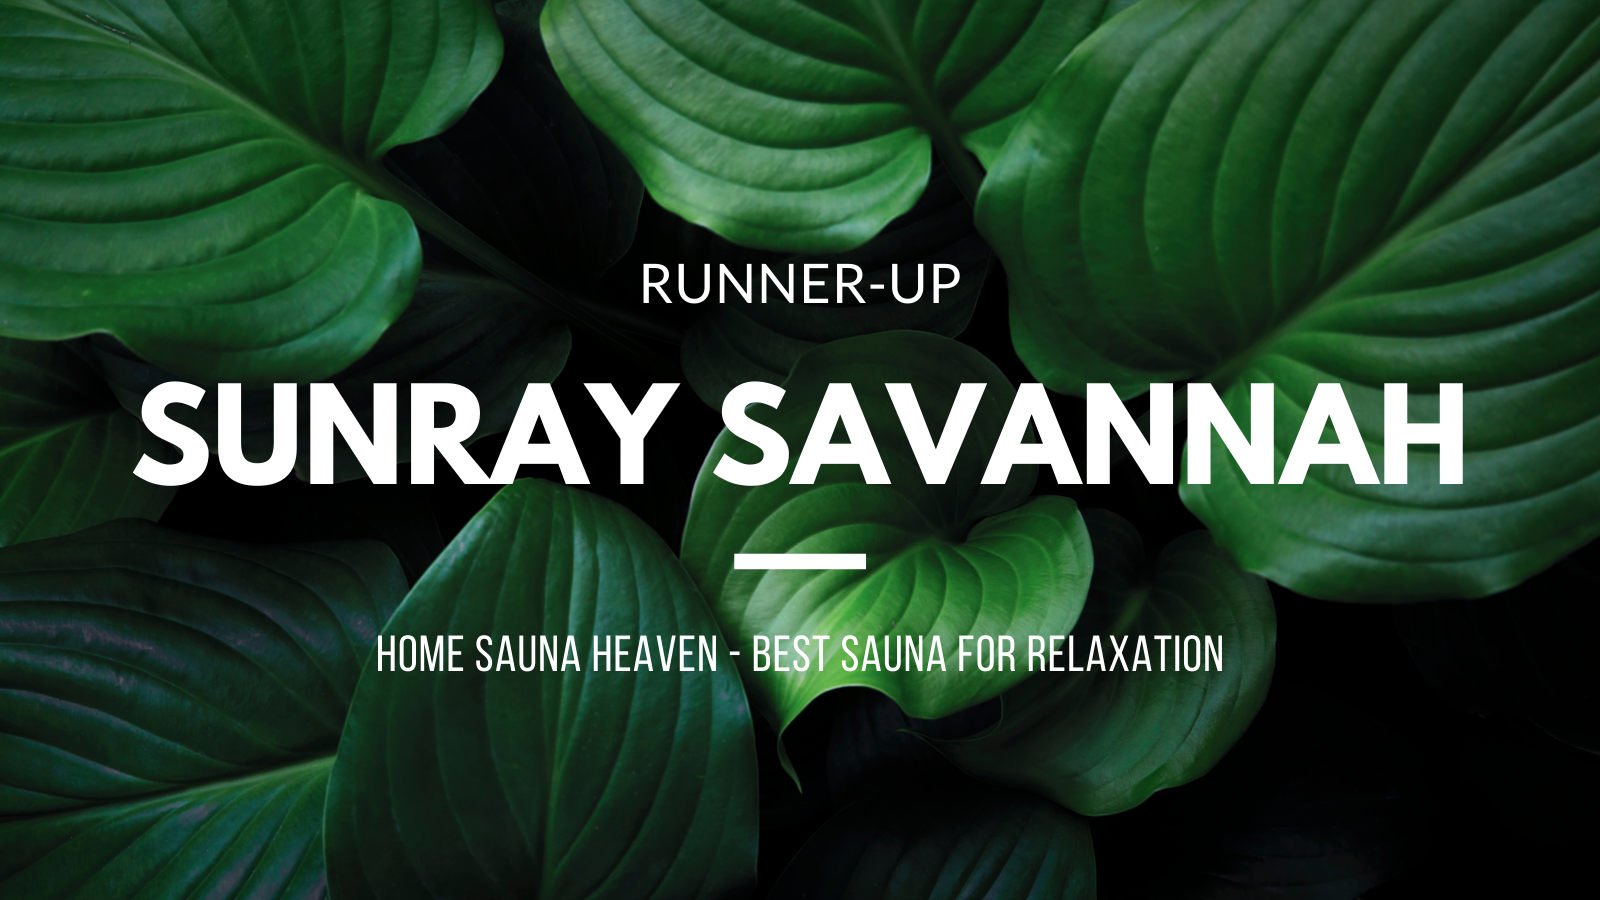 Sunray Savannah Sauna